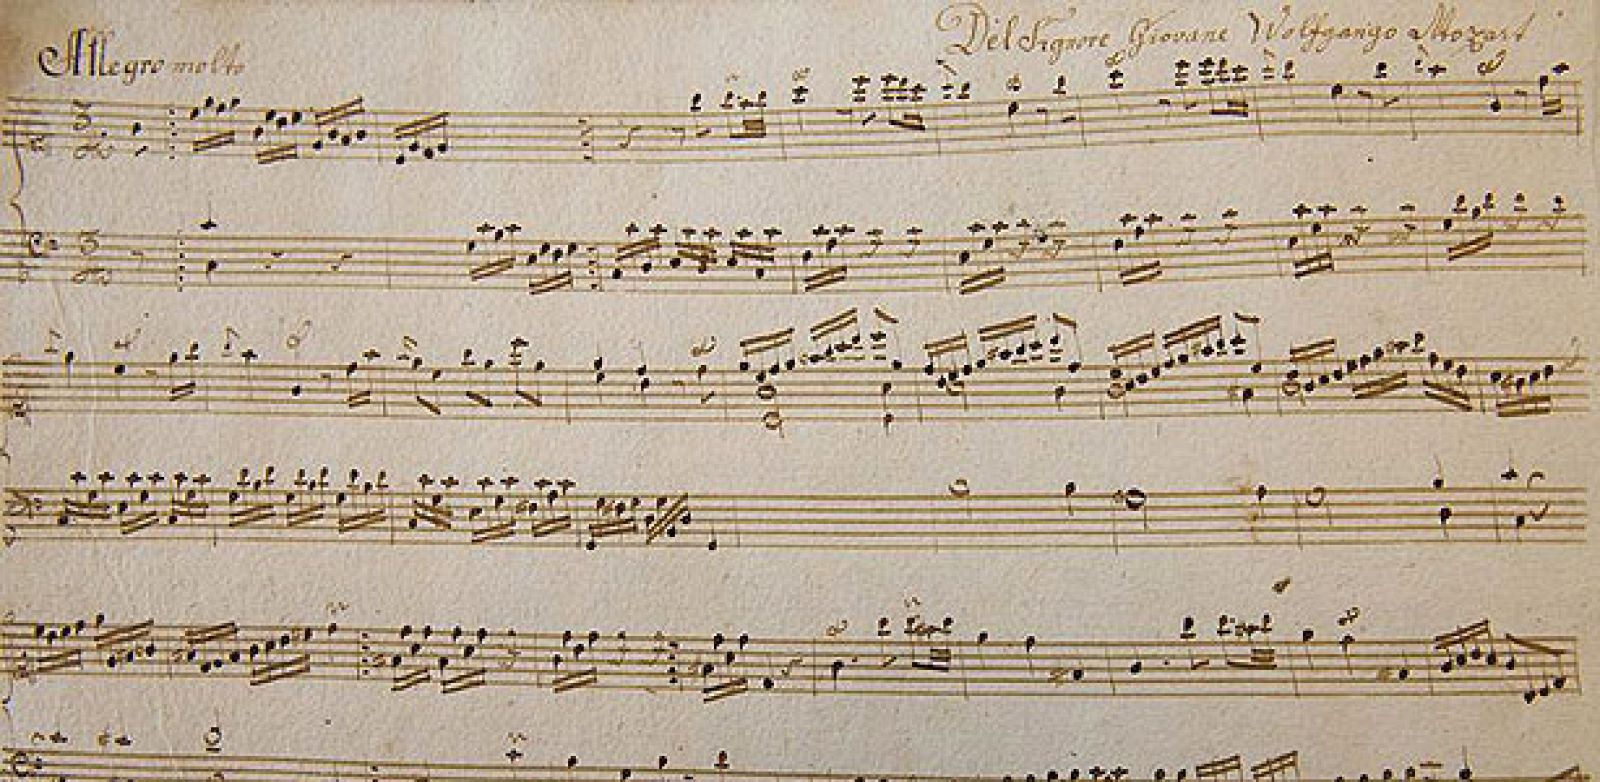 Fragmento de la partitura de Mozart recién descubierta